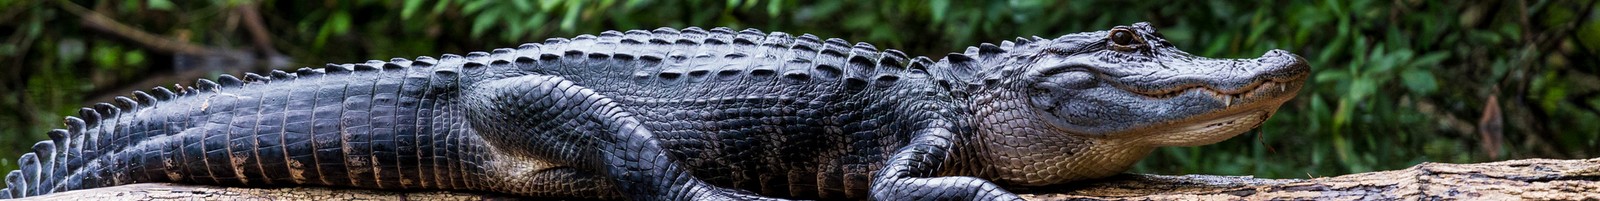 L’alligator, nouvel animal de soutien émotionnel ?